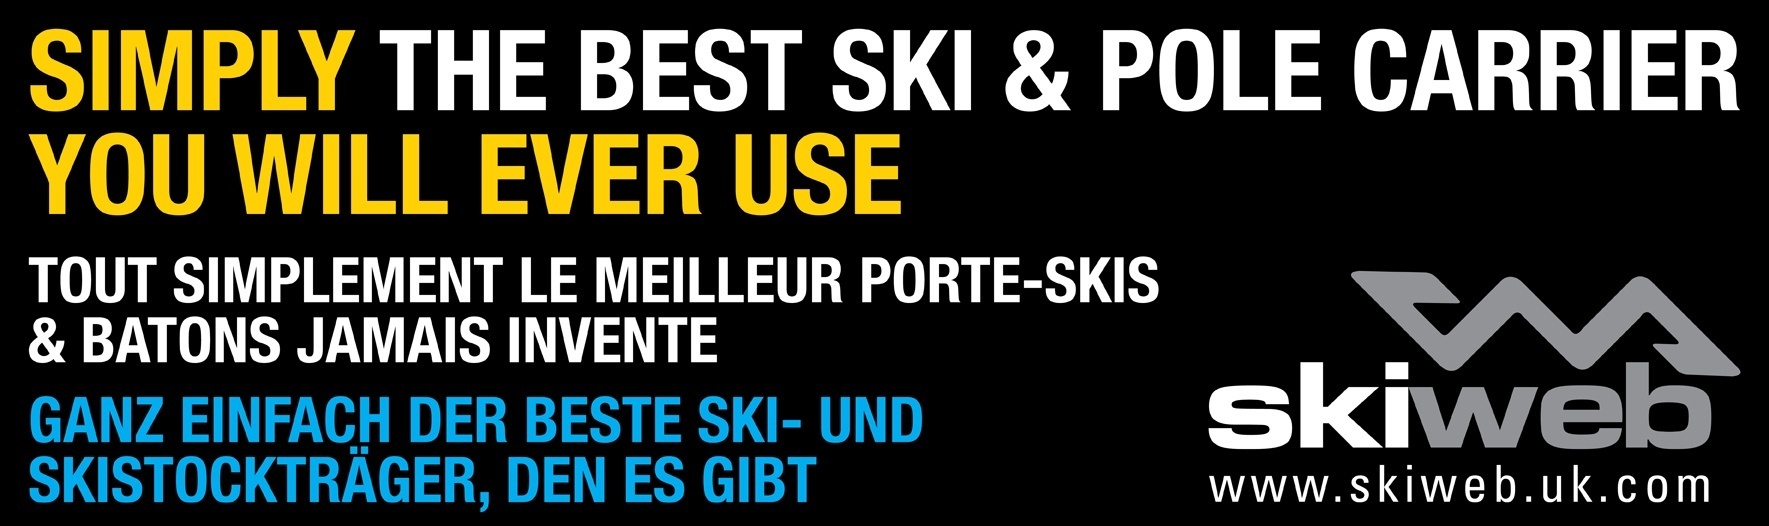 skiweb ski carriers